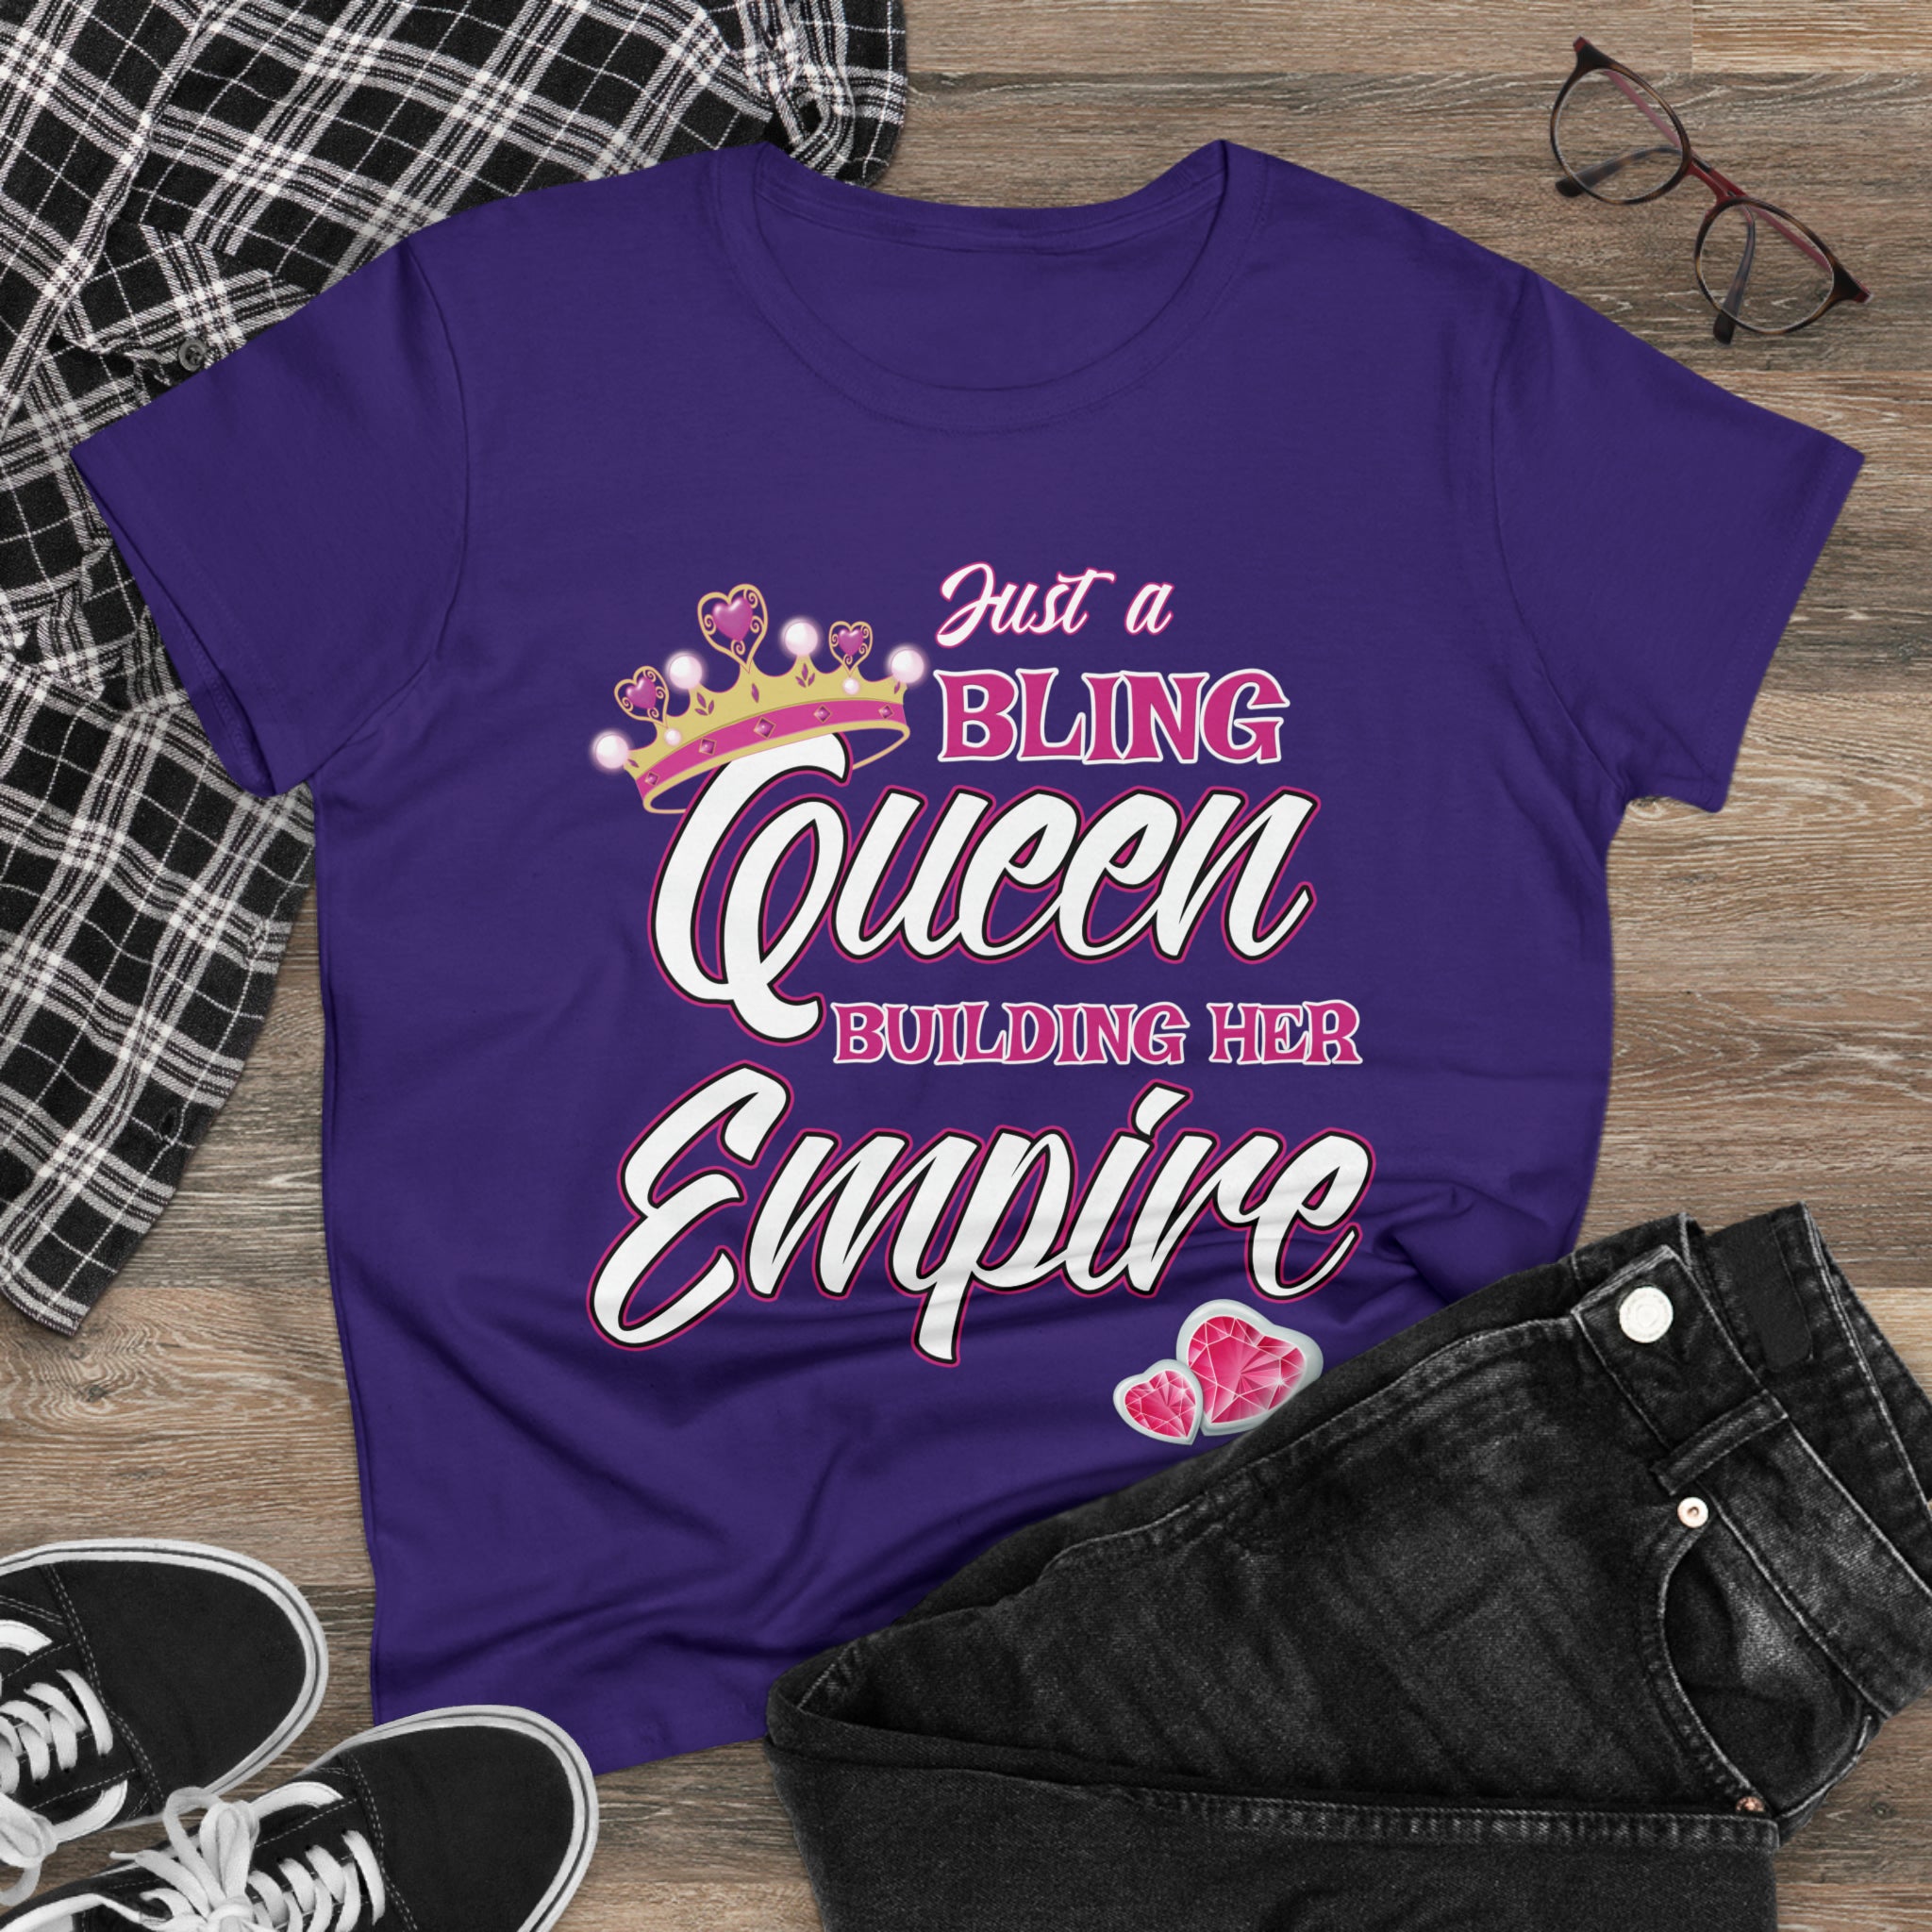 Women's Midweight Cotton Tee Queen Building her Empire